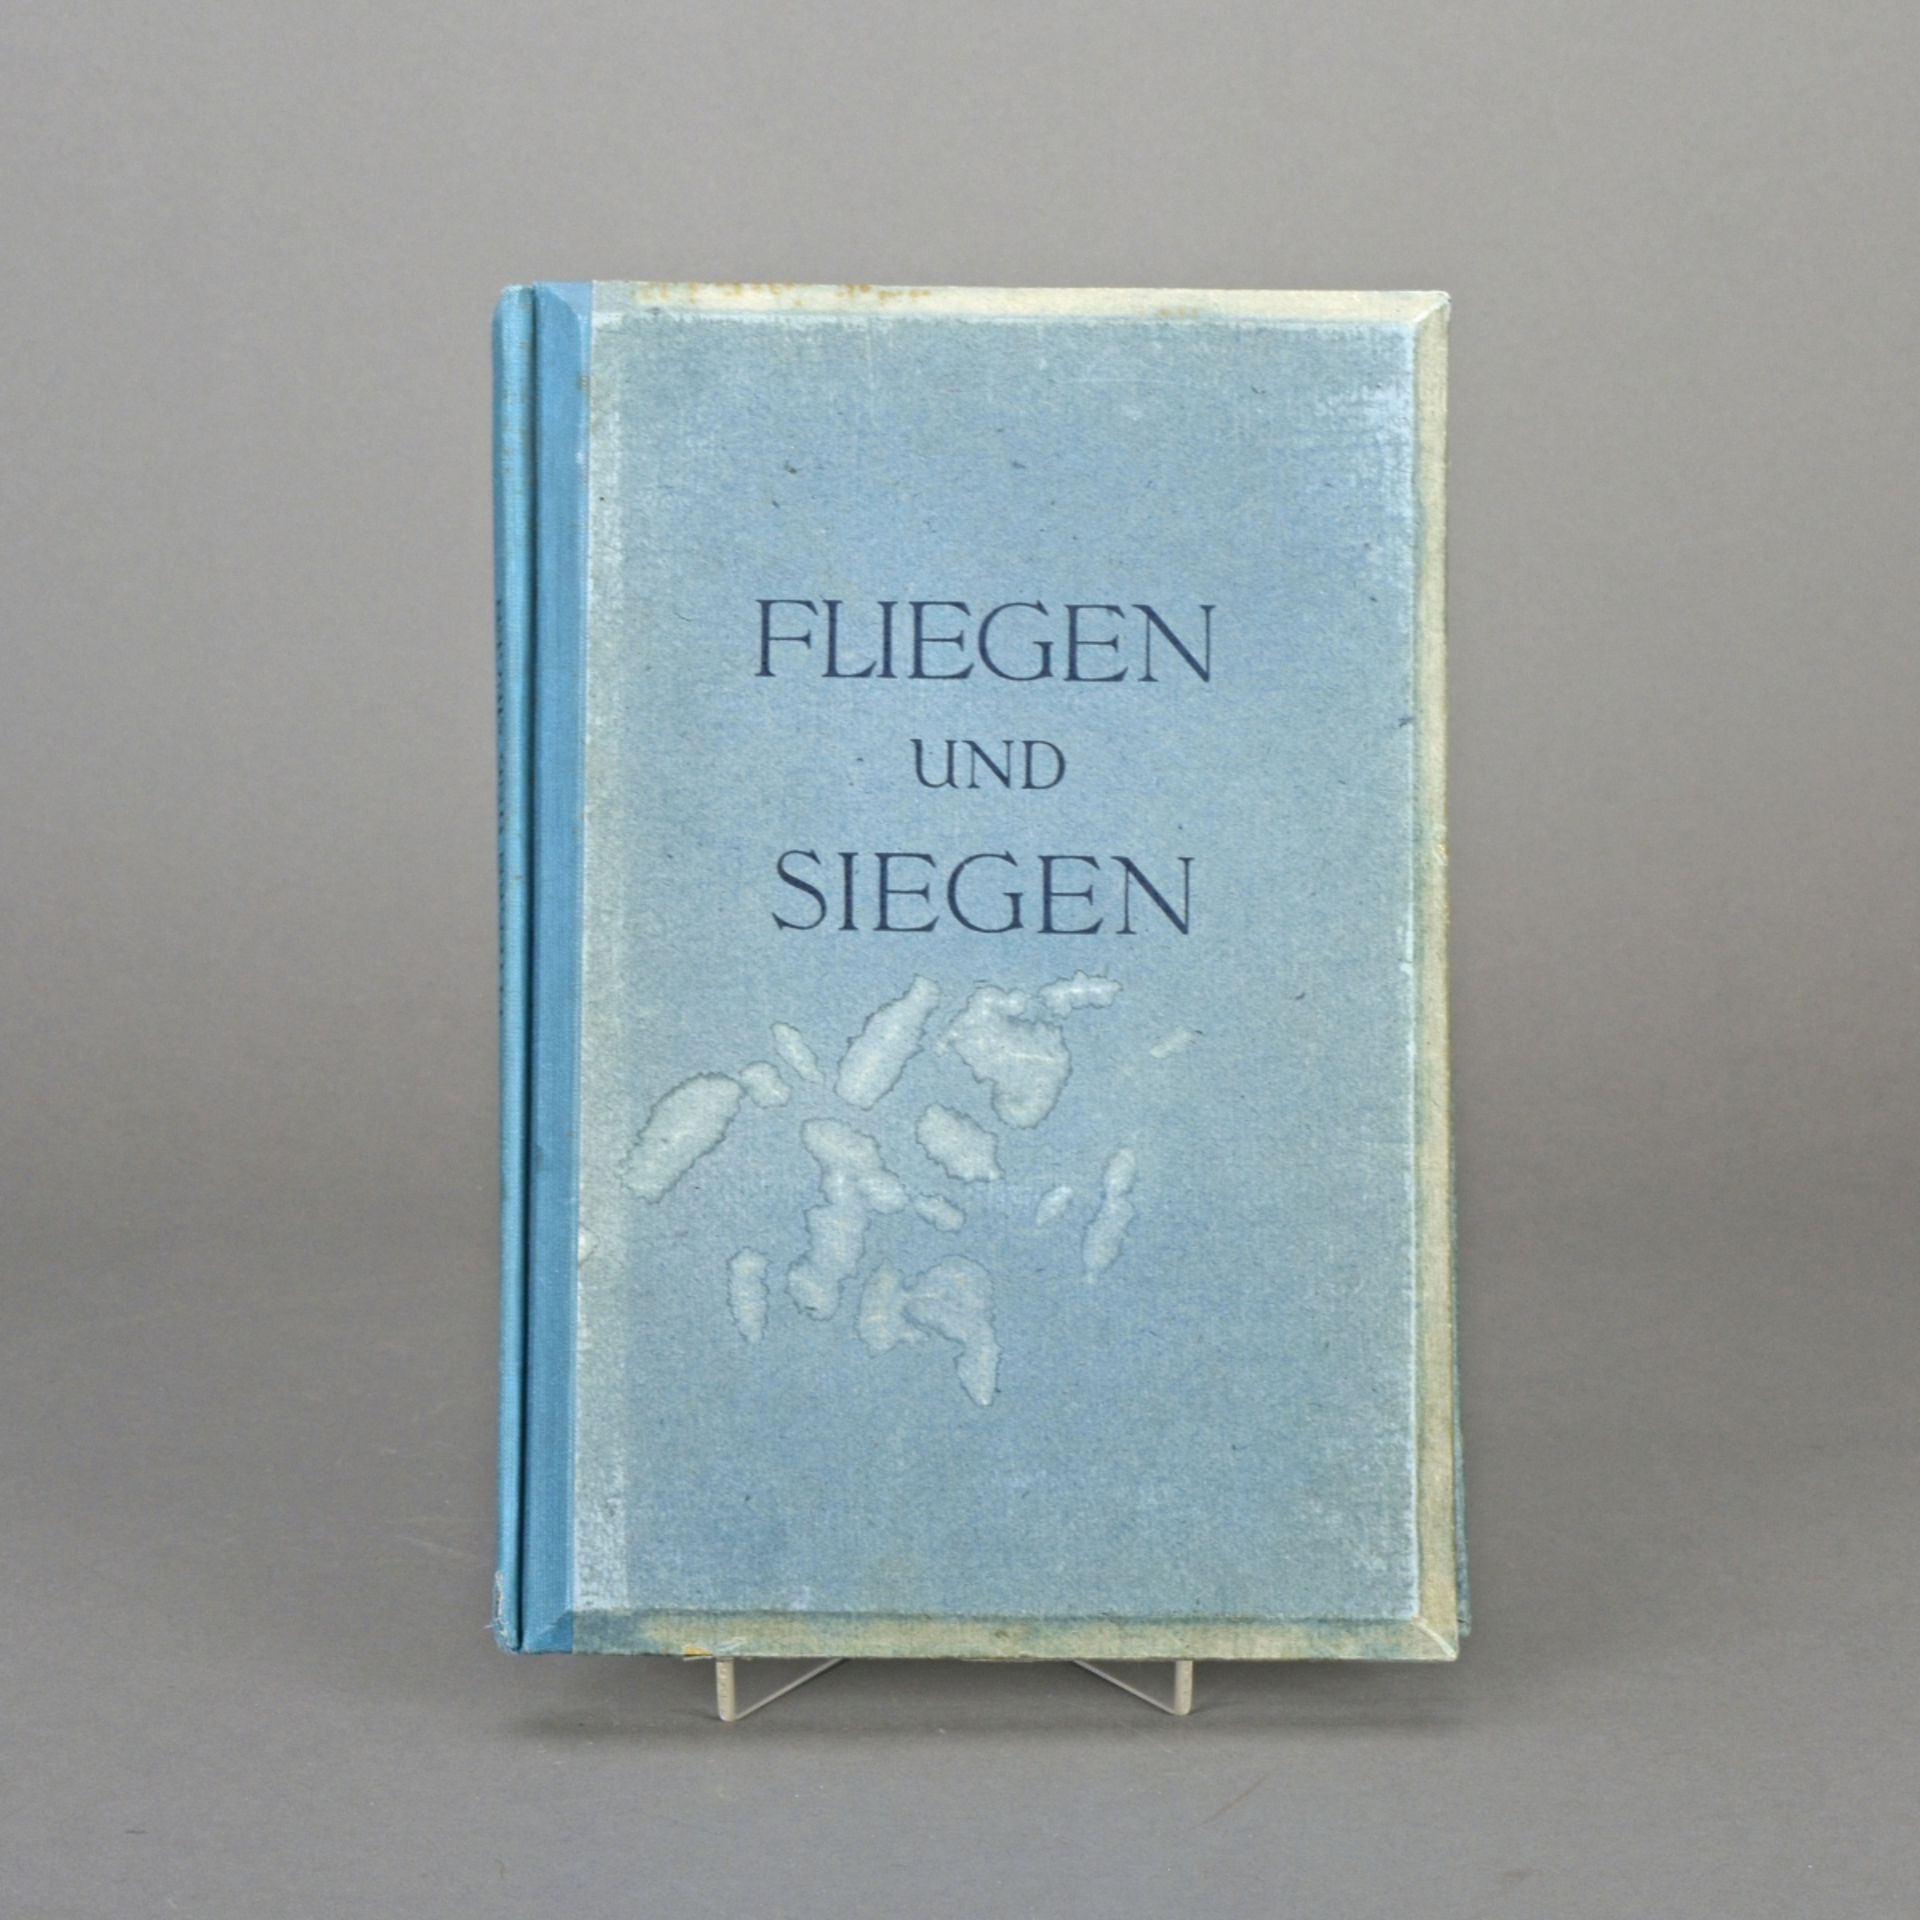 Album Fliegen und Siegen - Image 2 of 3